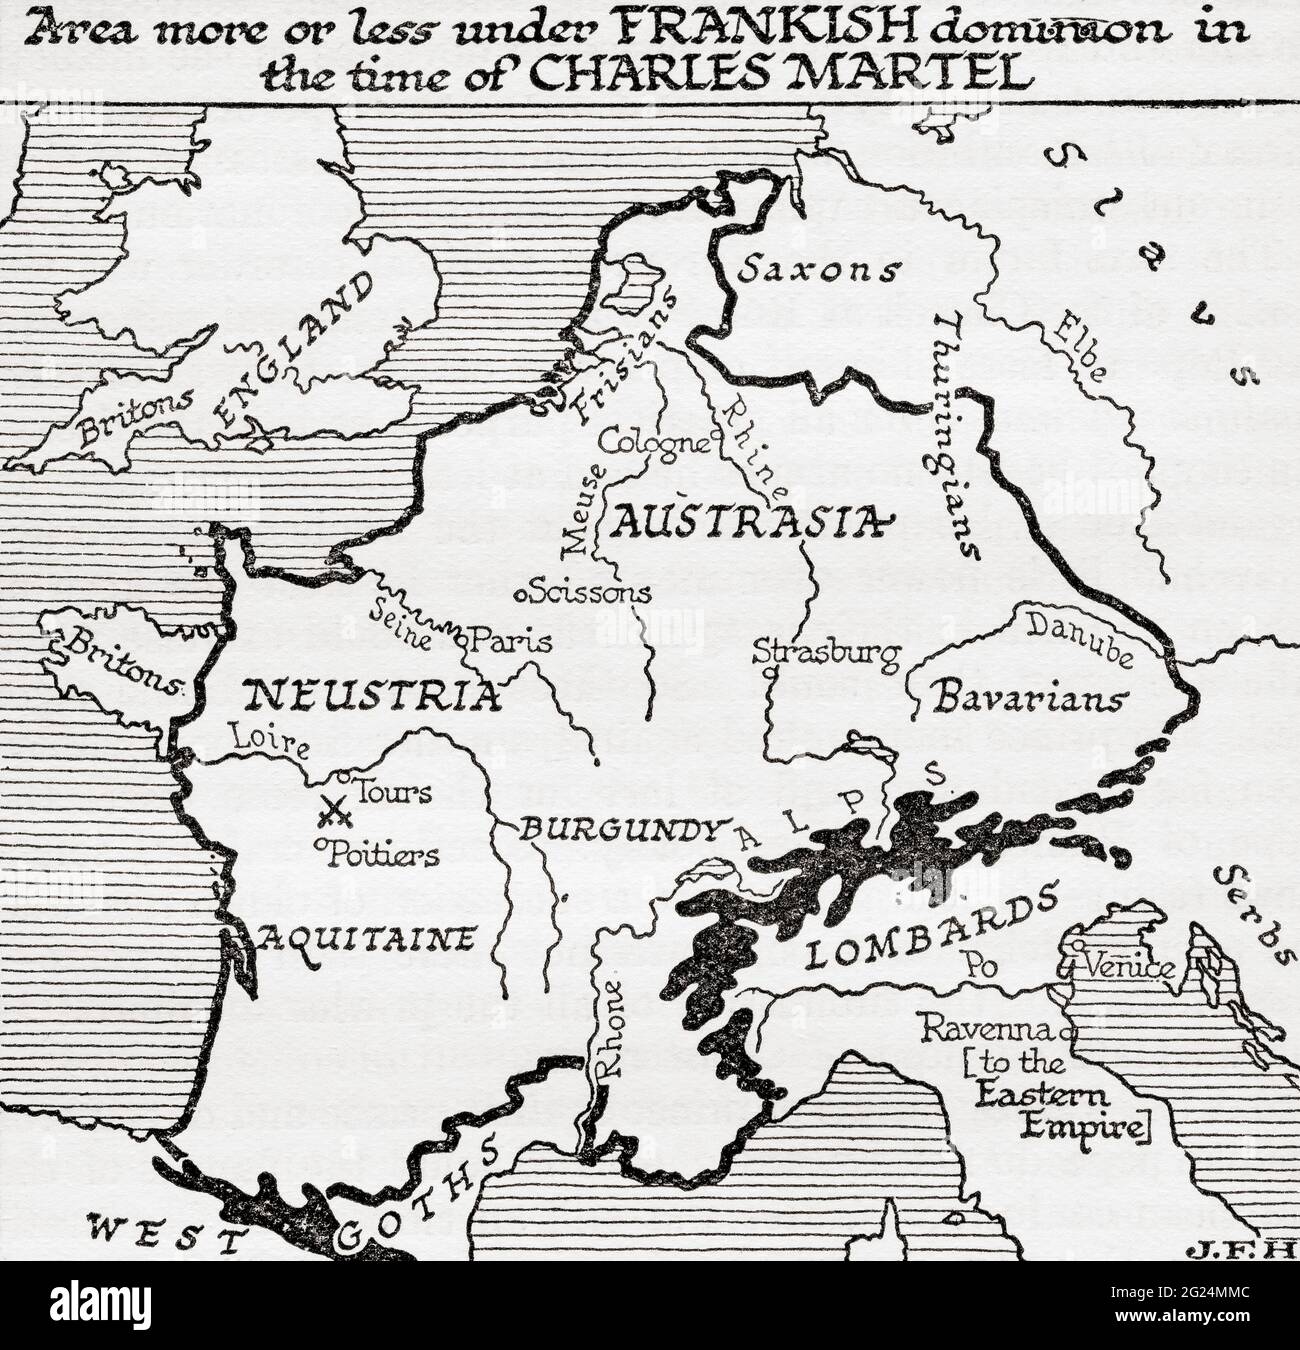 Mappa che mostra la zona più o meno sotto il dominio dei Franchi ai tempi di Carlo Martel, VIII secolo. Da una breve storia del mondo, pubblicato c.1936 Foto Stock